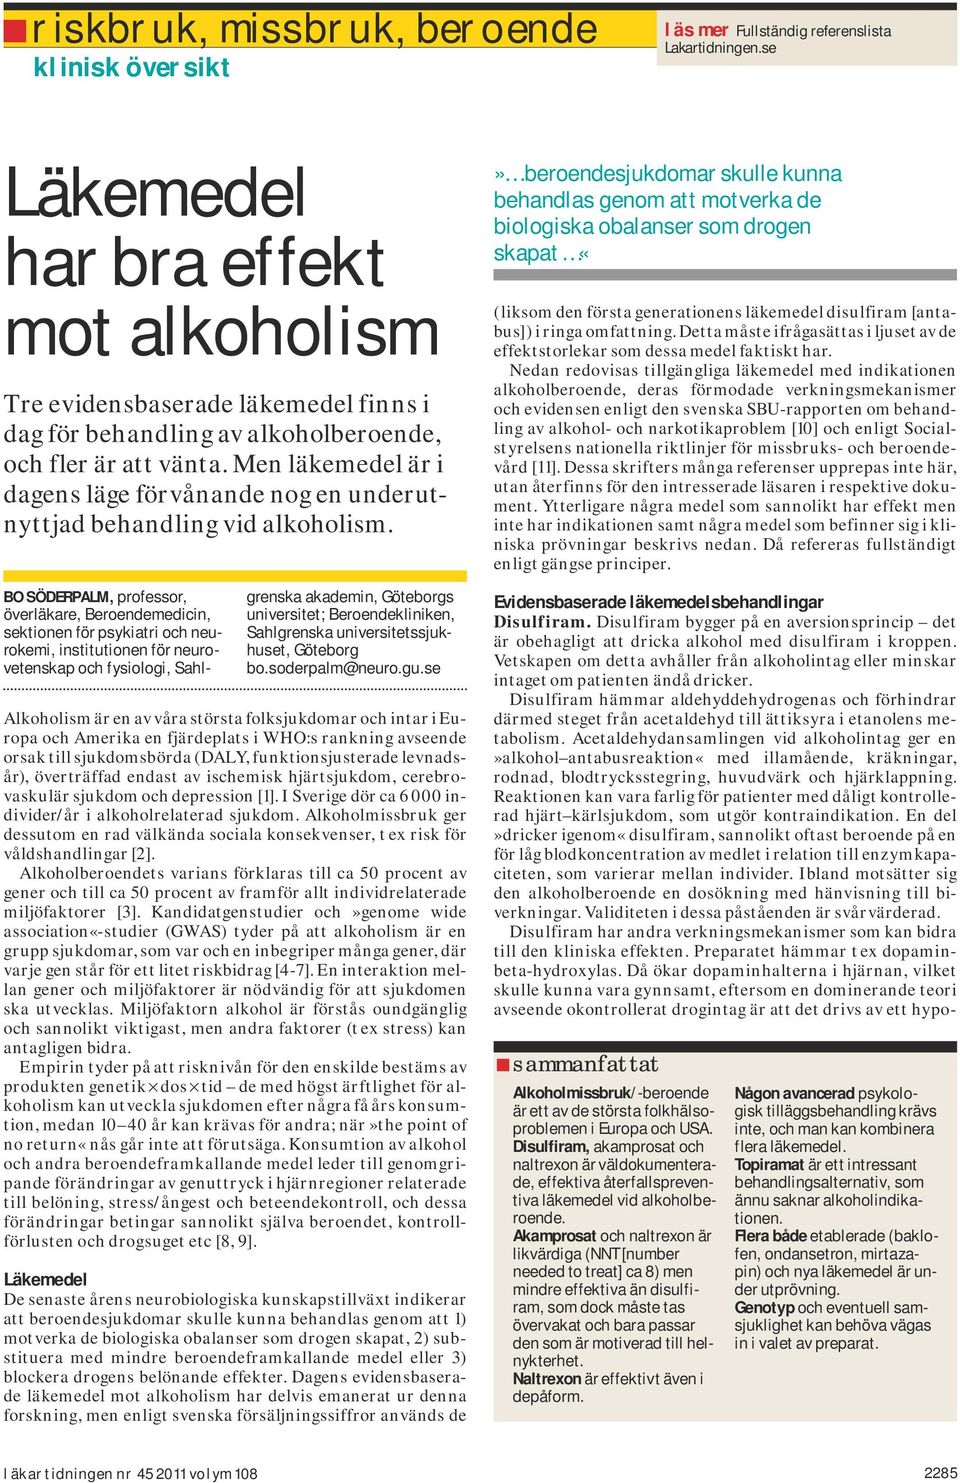 Men läkemedel är i dagens läge förvånande nog en underutnyttjad behandling vid alkoholism.